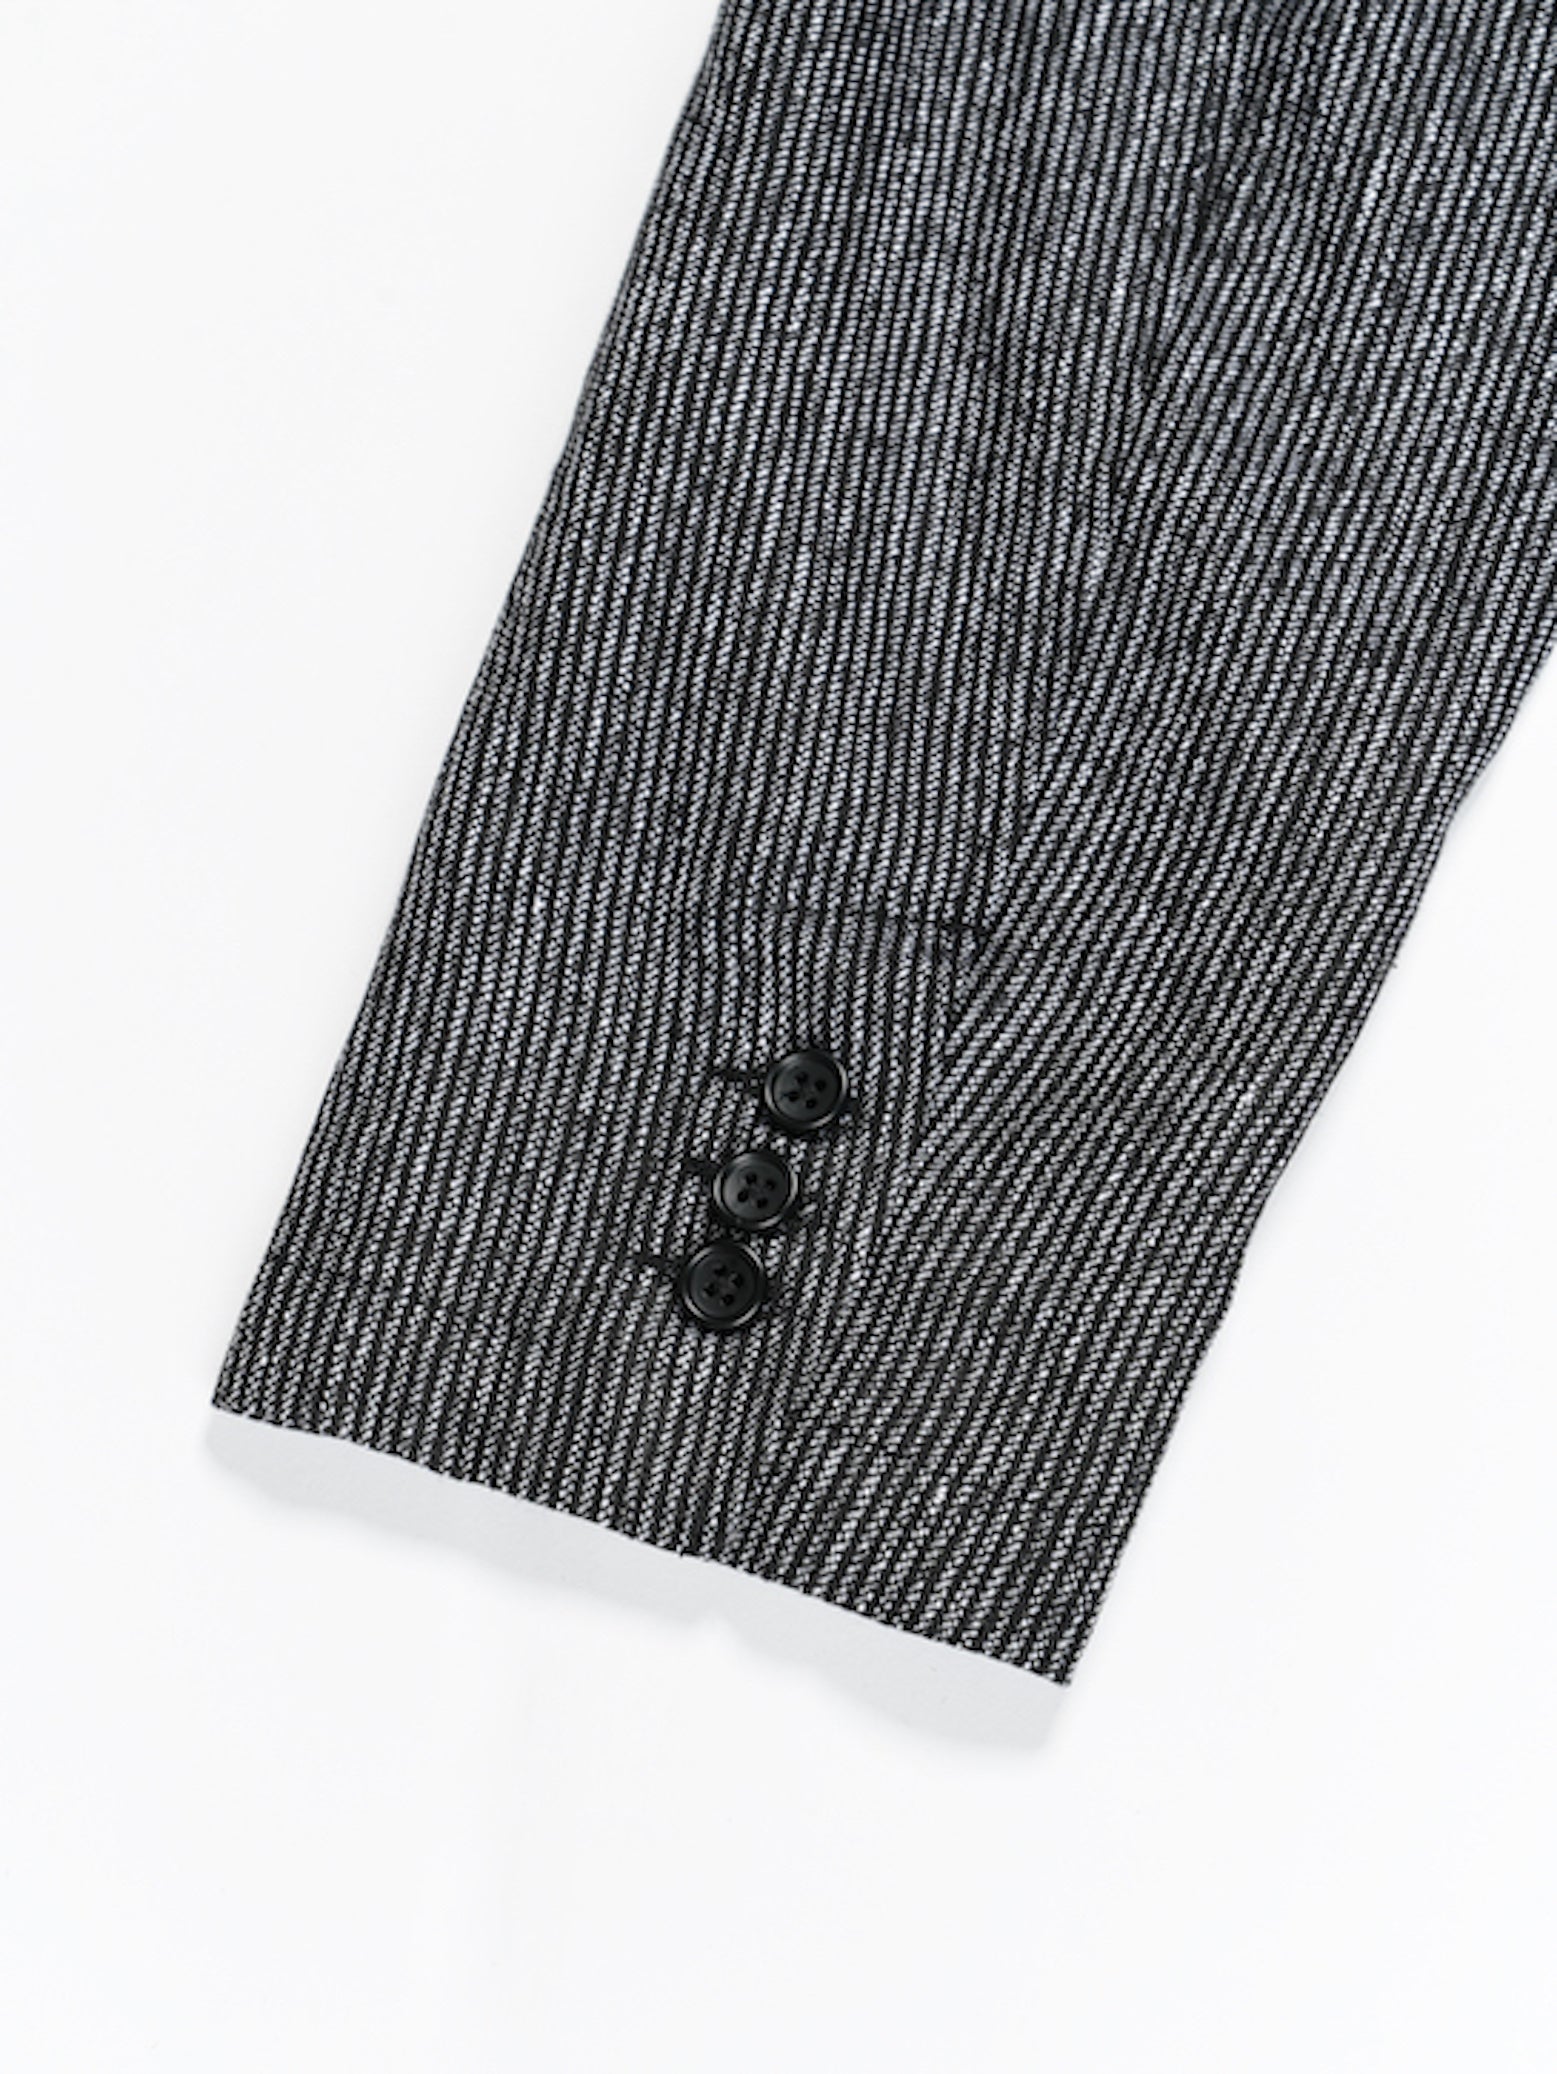 Loiter Jacket - Black / Grey Linen Stripe